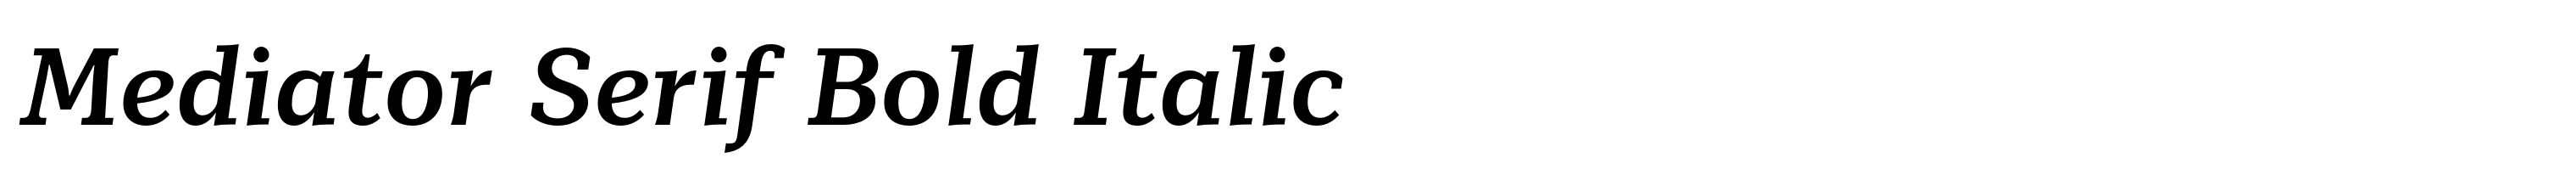 Mediator Serif Bold Italic